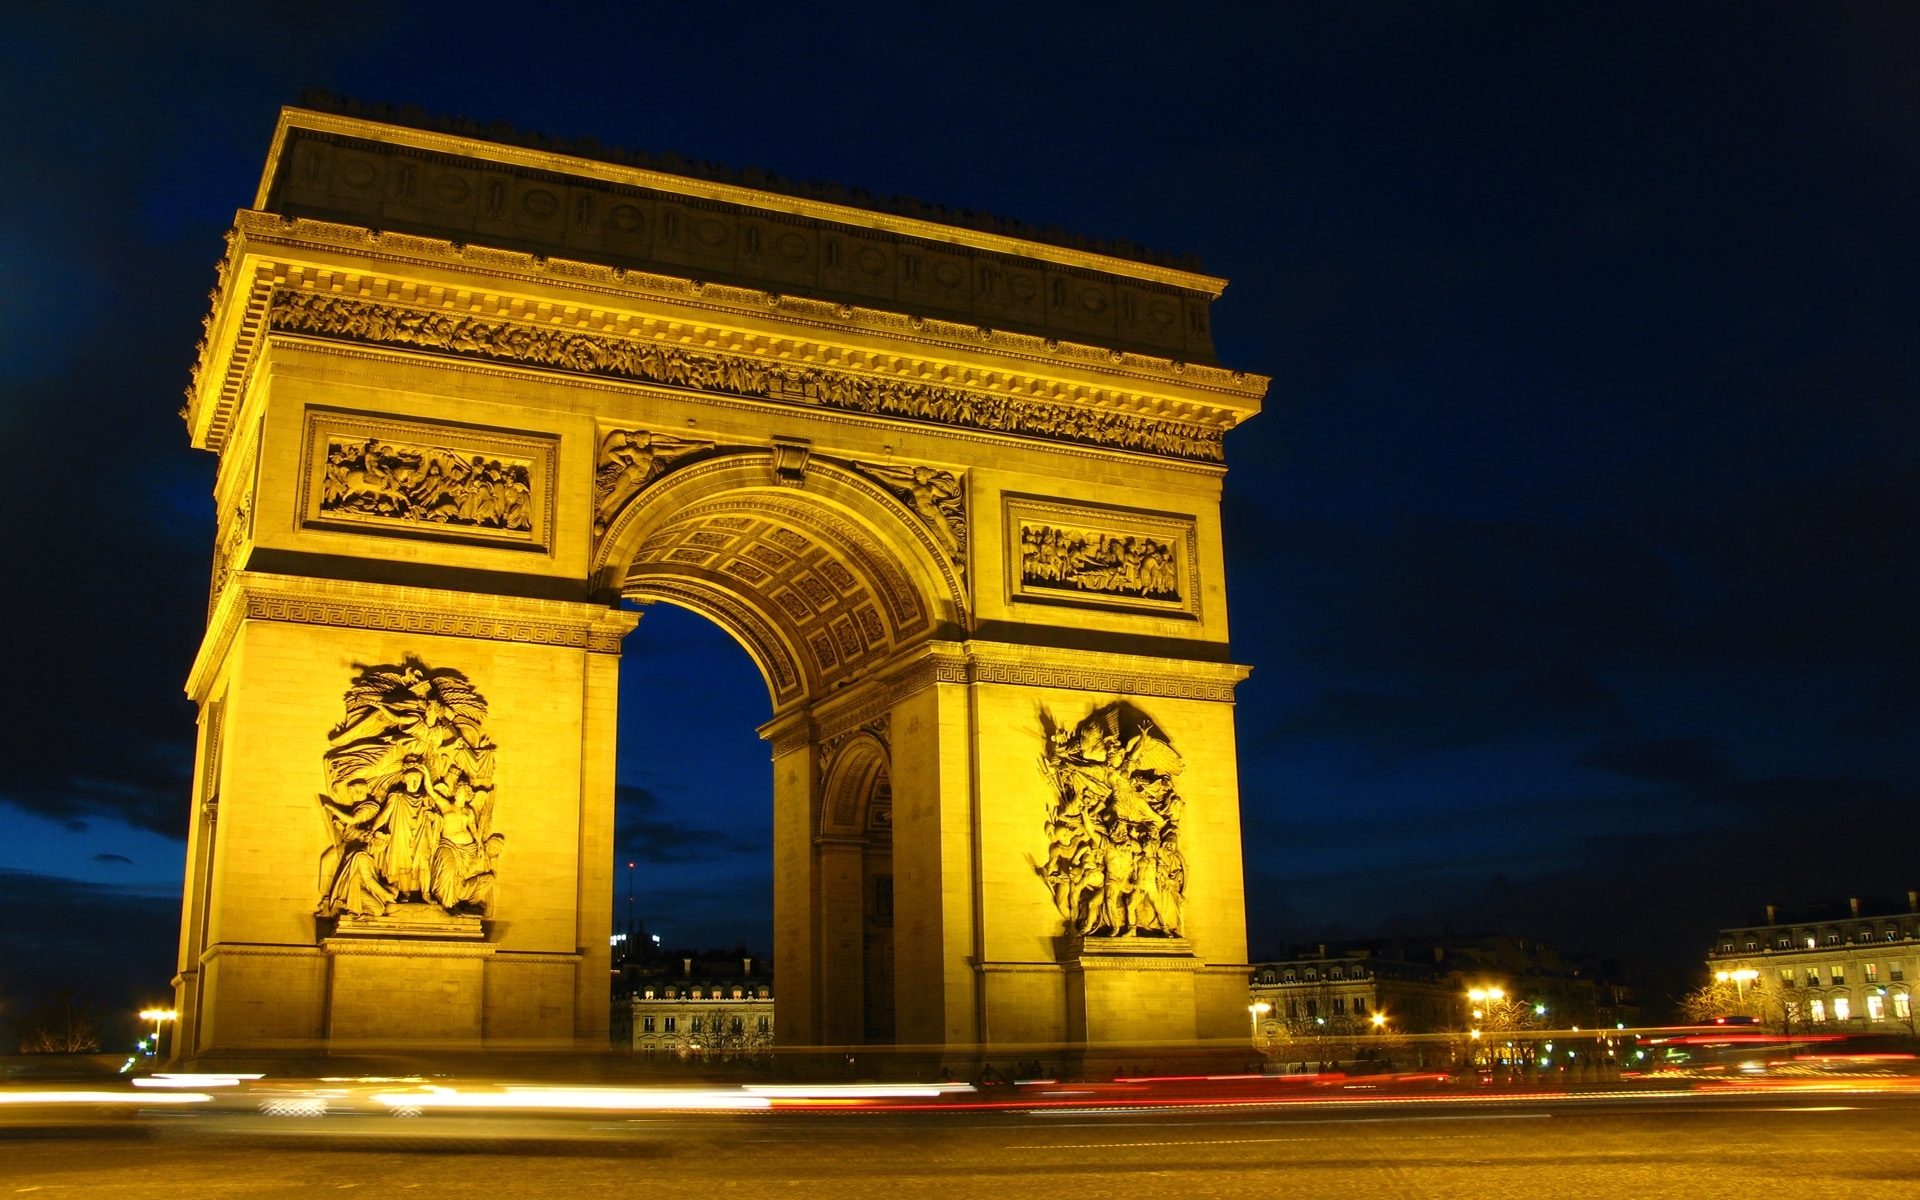 Free download wallpaper Cities, Architecture, Paris on your PC desktop